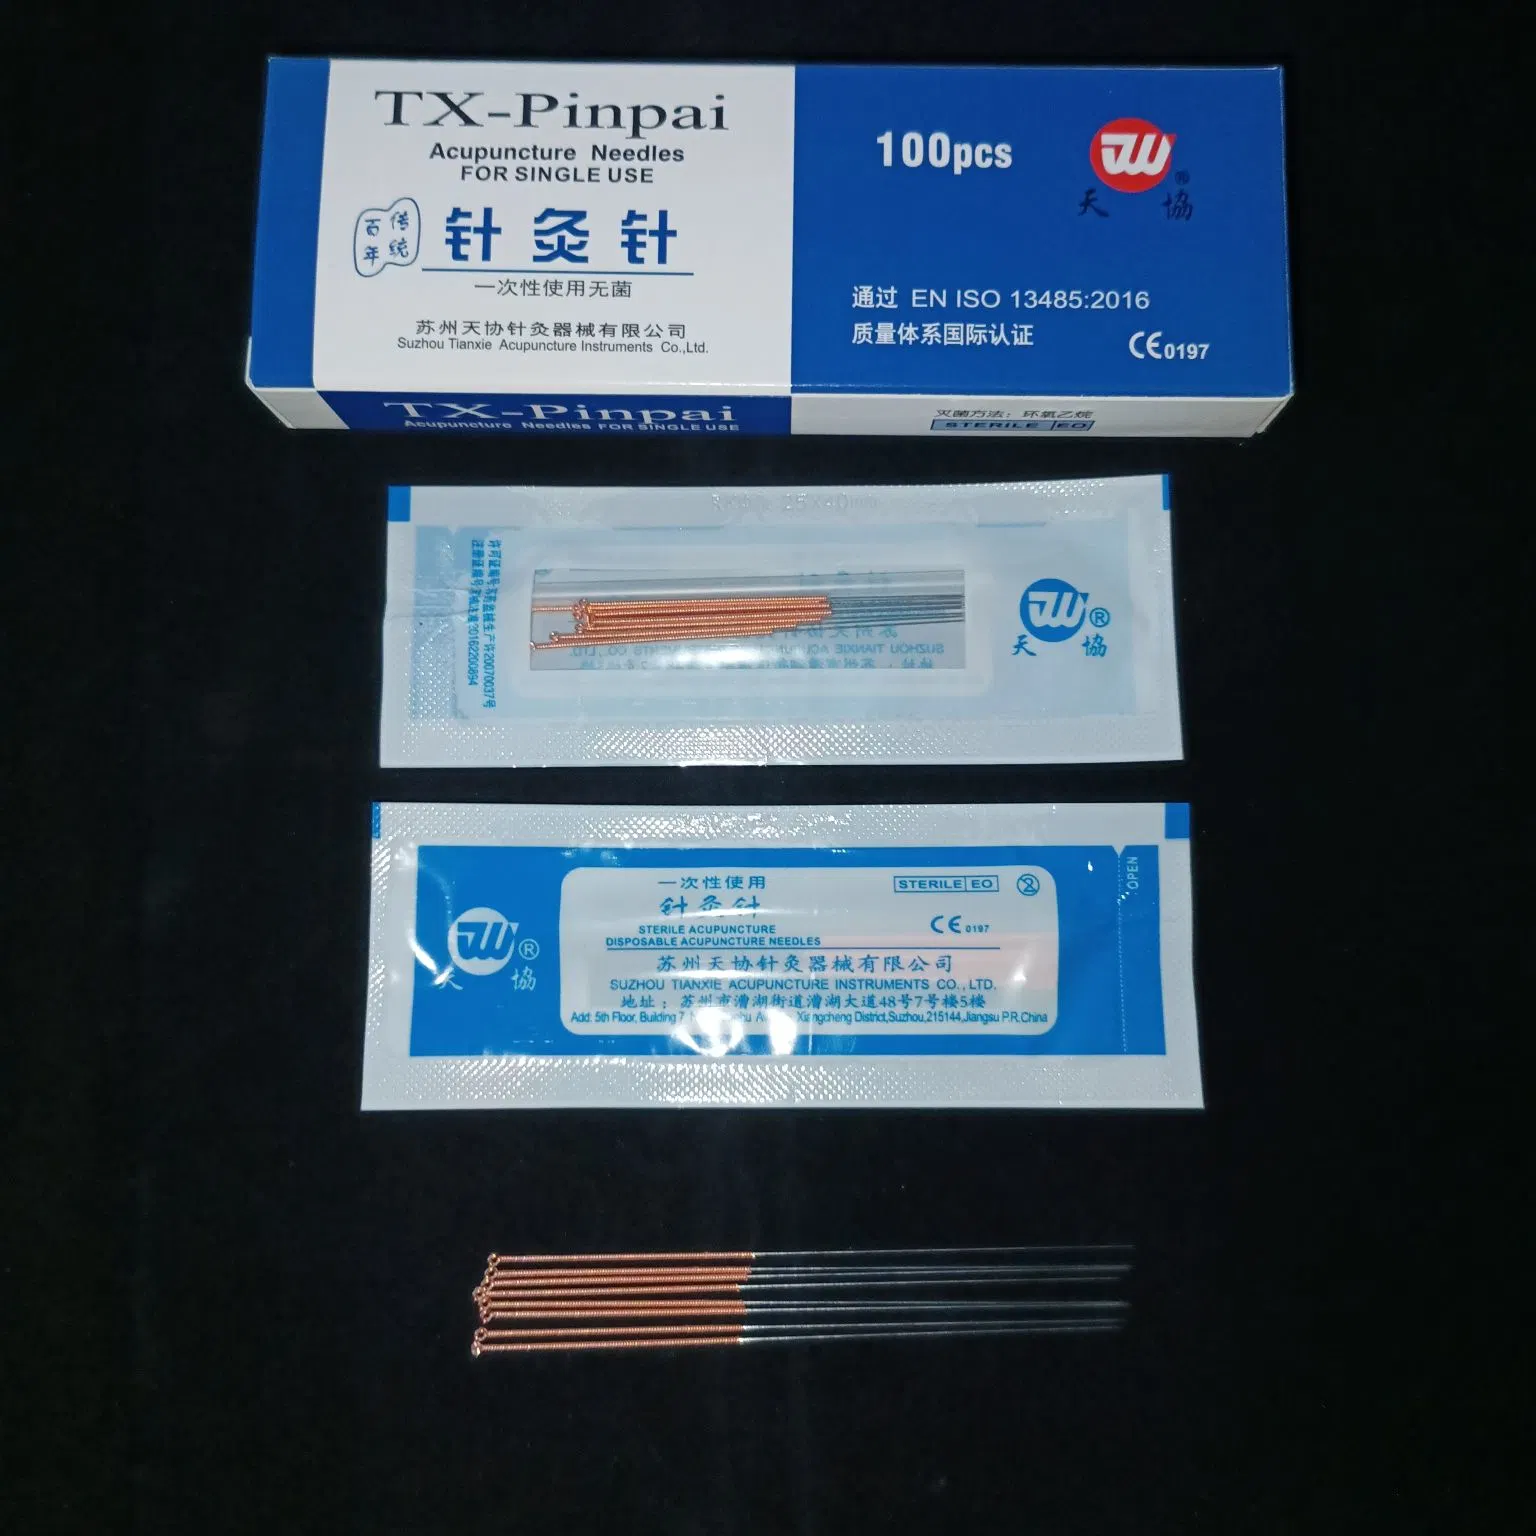 Tianxie Marke Fabrik Herstellung Einweg-Kupfer-Griff Sterile Akupunktur Nadel Mit Plastikbeutel Verpackung